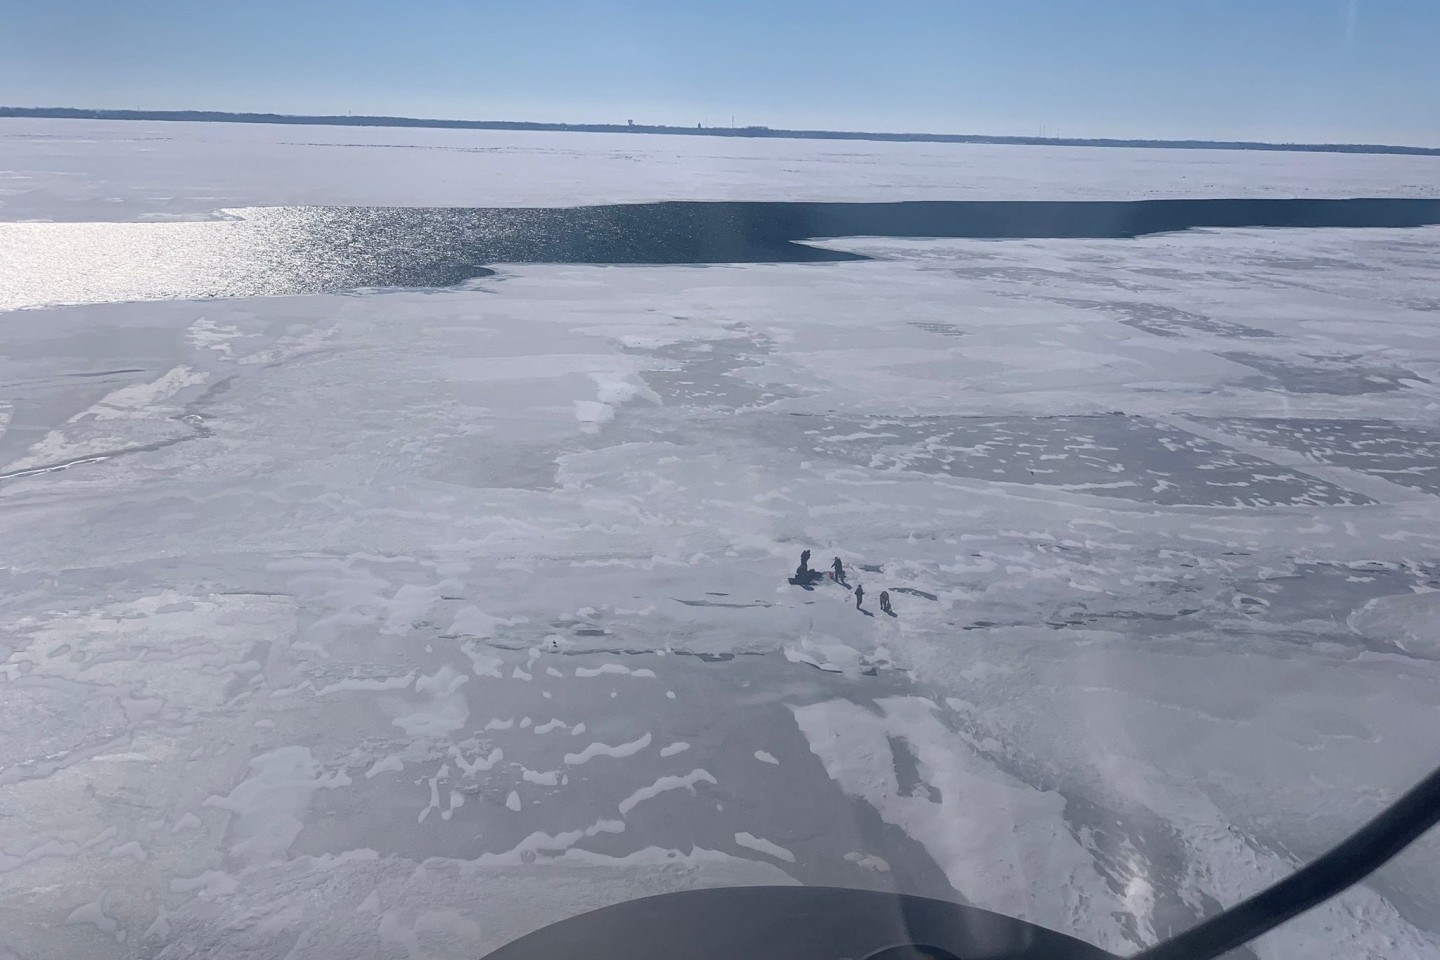 Auf einer Eisscholle gestrandete Menschen auf einem der fünf Großen Seen im Nordosten der USA. Die US-Küstenwache konnte 18 Menschen von der treibenden Eisscholle retten.